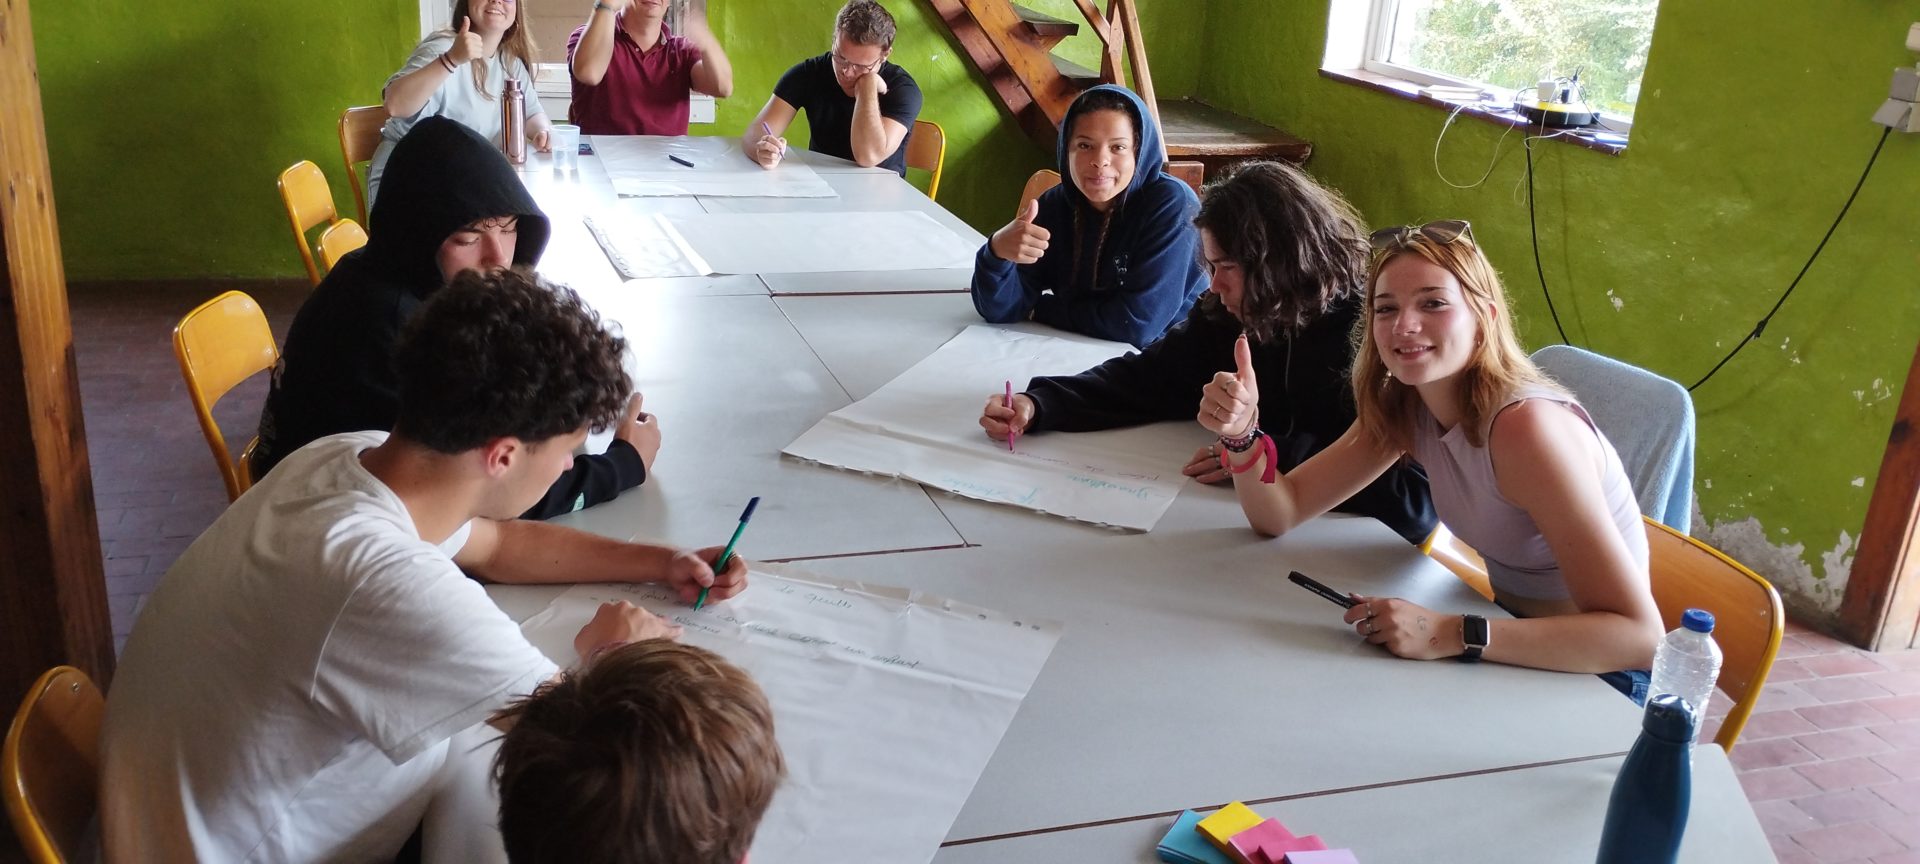 Plusieurs élèves sont réunis autour d'une table dans une salle aux murs verts. Ils travaillent ensemble en écrivant sur des grandes feuilles blanches. Plusieurs d'entre eux regardent l'appareil photo et lèvent leur pouce.